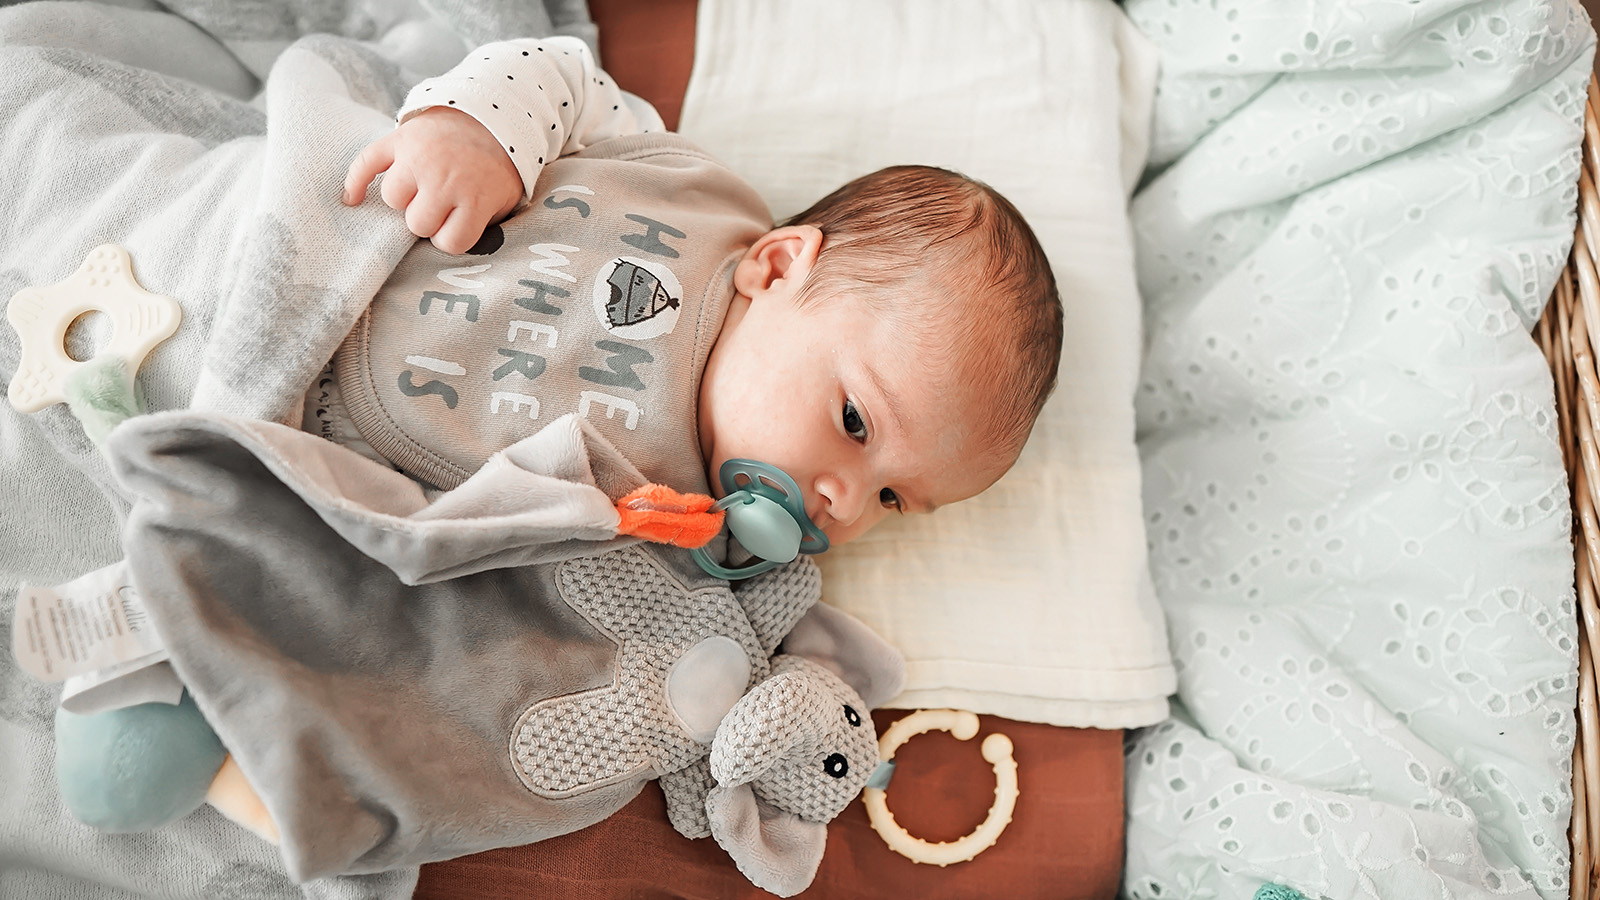 Niespokojny sen niemowlaka może mieć różne przyczyny, zarówno fizjologiczne, jak i środowiskowe - na zdjęciu niemowlę leży na łóżku, pod głową ma białą pieluszkę, w buzi trzyma smoczek, obok leży maskotka HelloMama